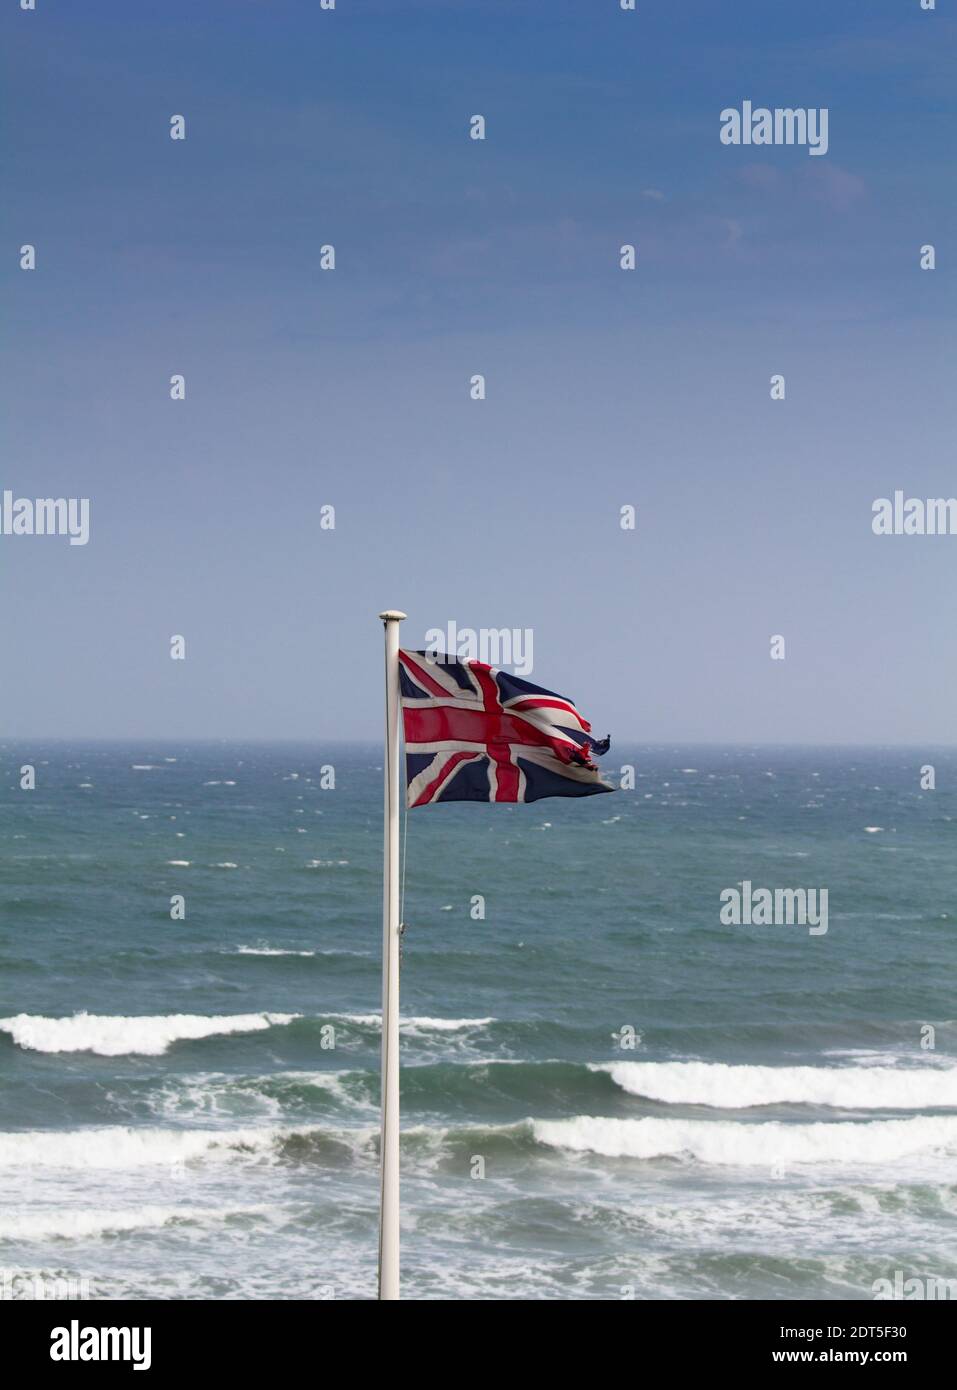 Bandiera di Unione in un forte vento onshore che domina la Manica, e una possibile tempesta di raccolta. Foto Stock